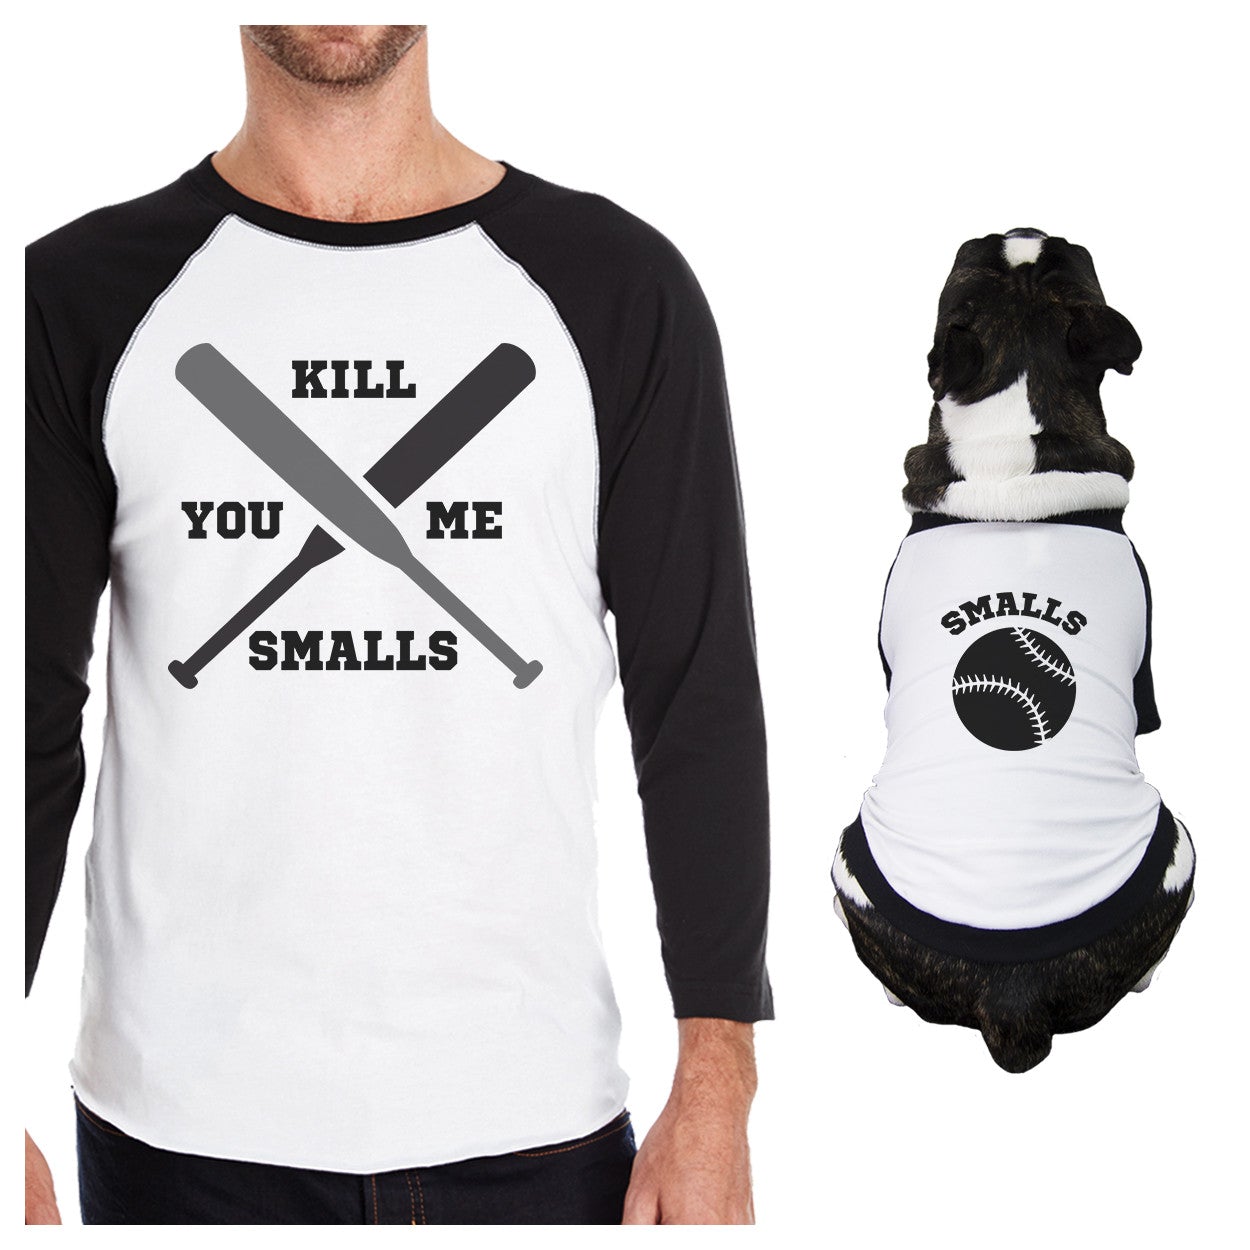 You Kill Me Smalls Baseball Owner and Pet Matching Black And White Baseball Shirts